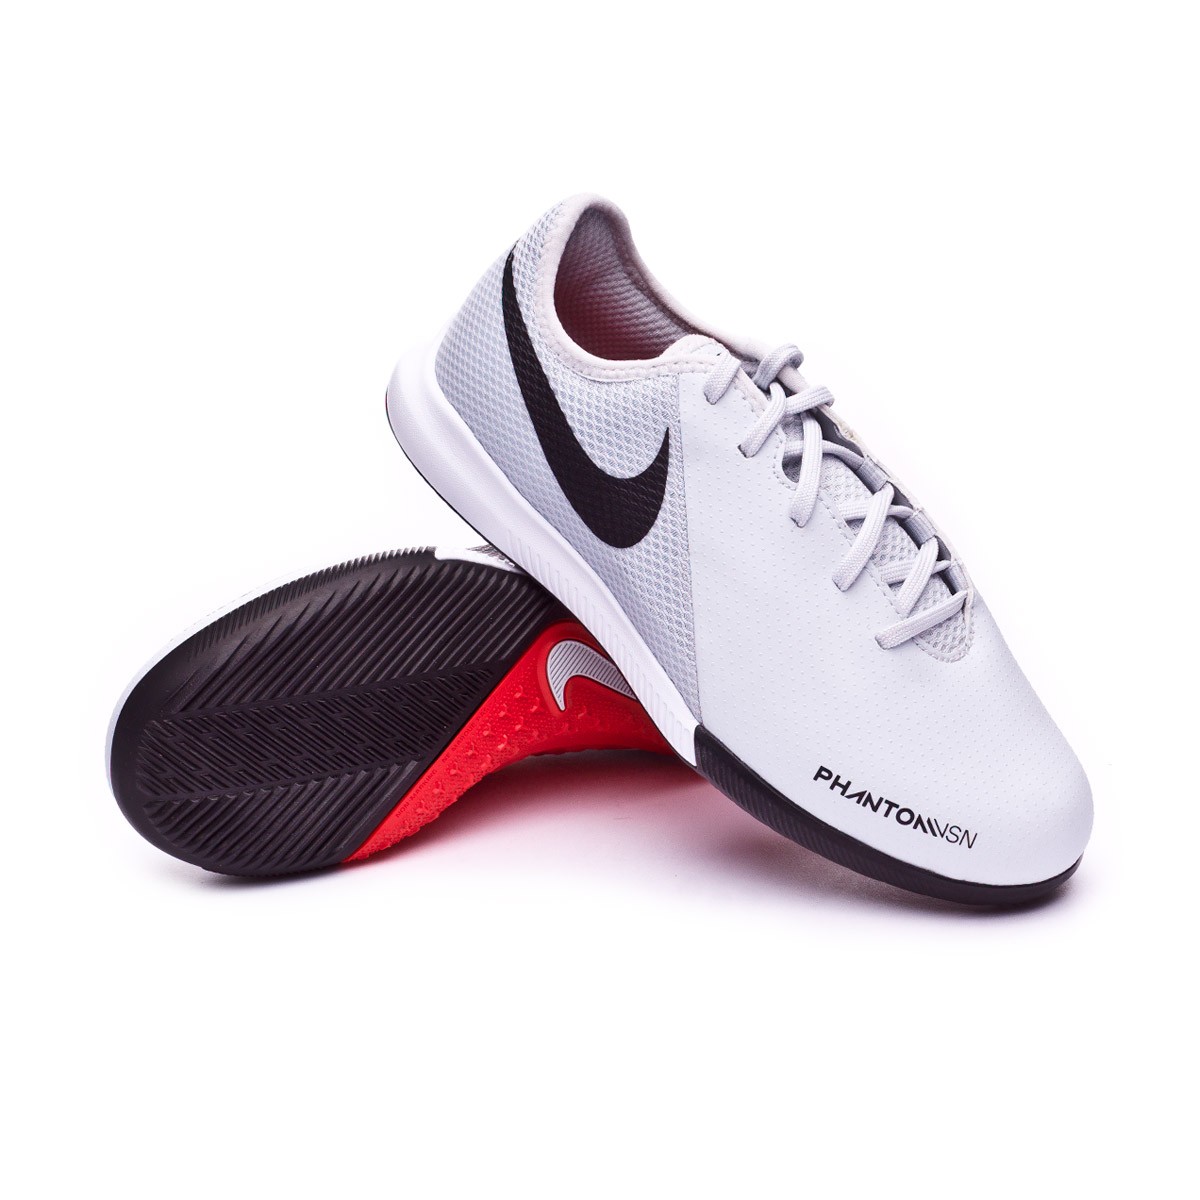 Tenis Nike Phantom Vision Academy IC Niño Pure platinum-Light crimson-White  - Tienda de fútbol Fútbol Emotion